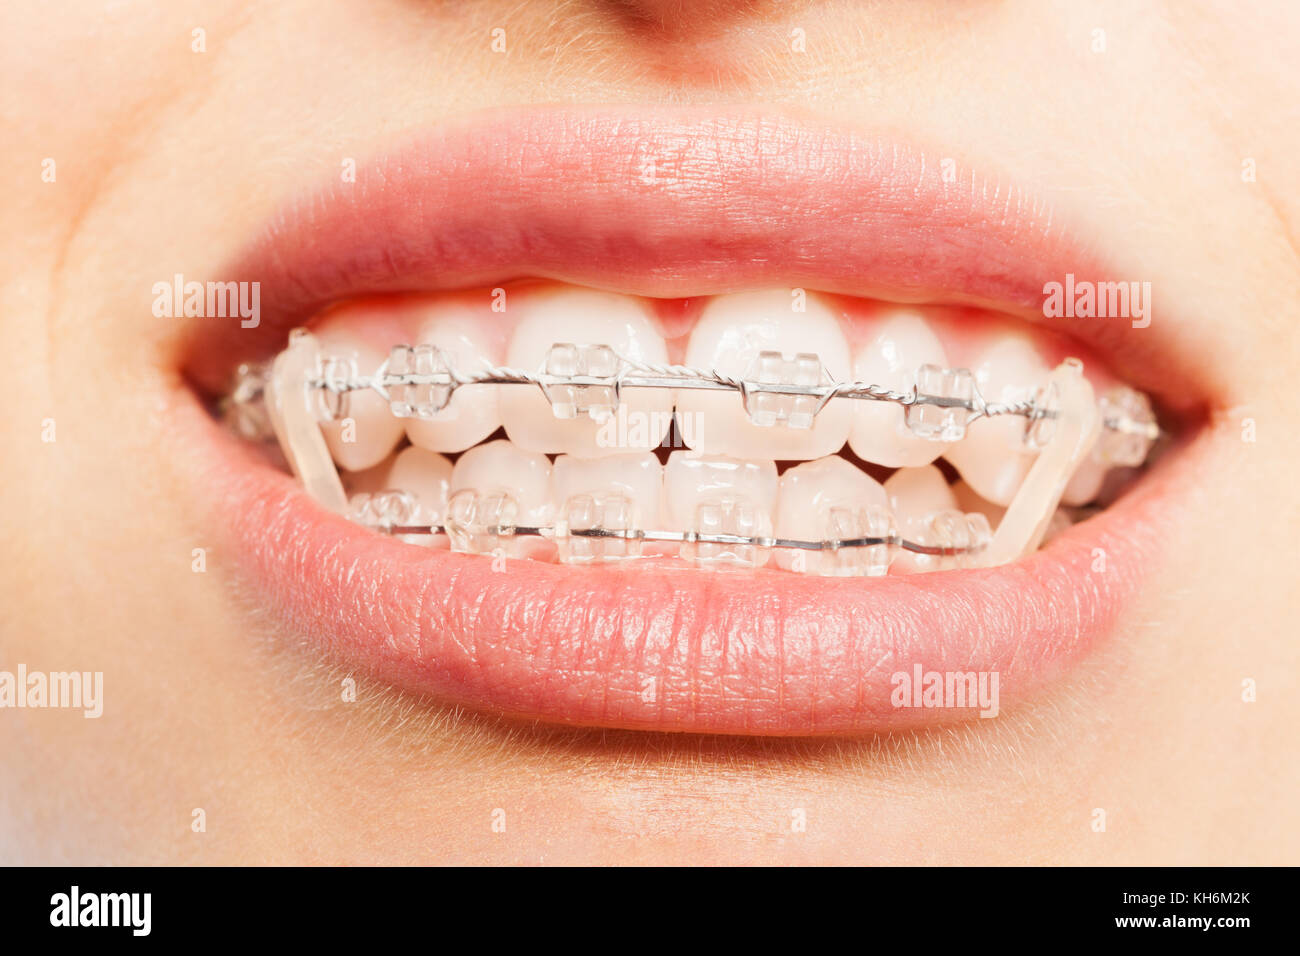 Ritratto di close-up di denti con bretelle dentali e elastici bocca piena Foto Stock